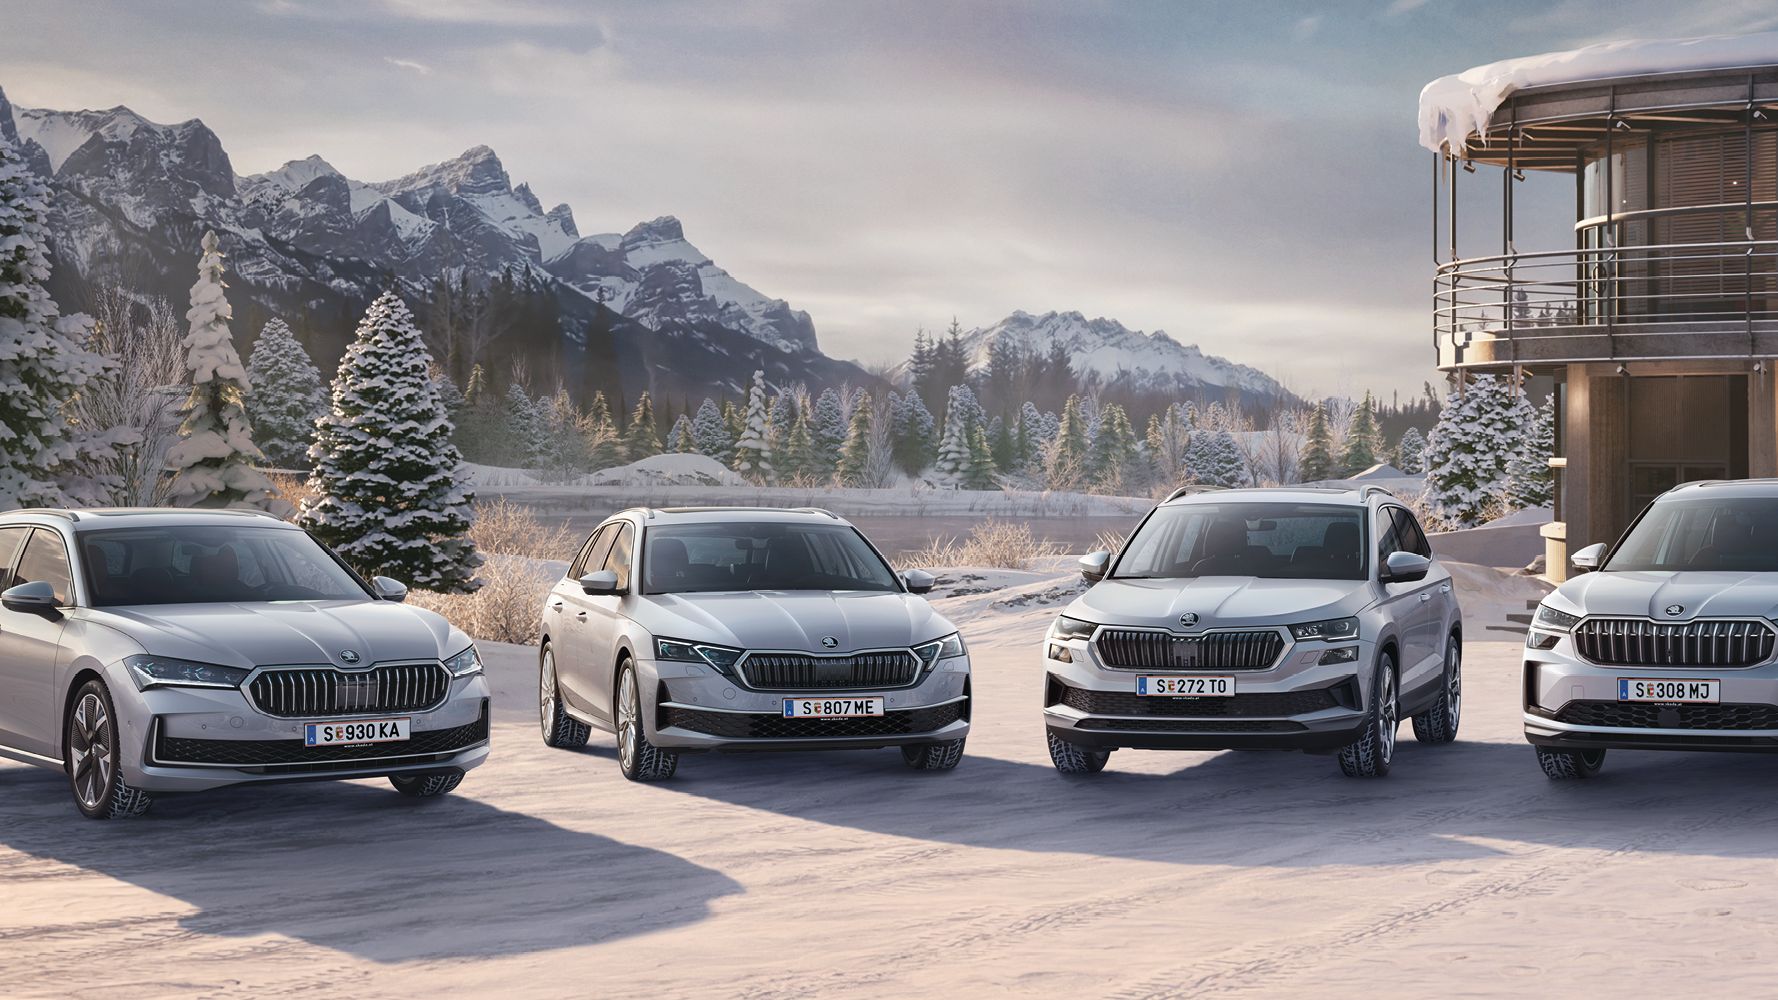 EIne Škoda Flotte in winterlicher Landschaft